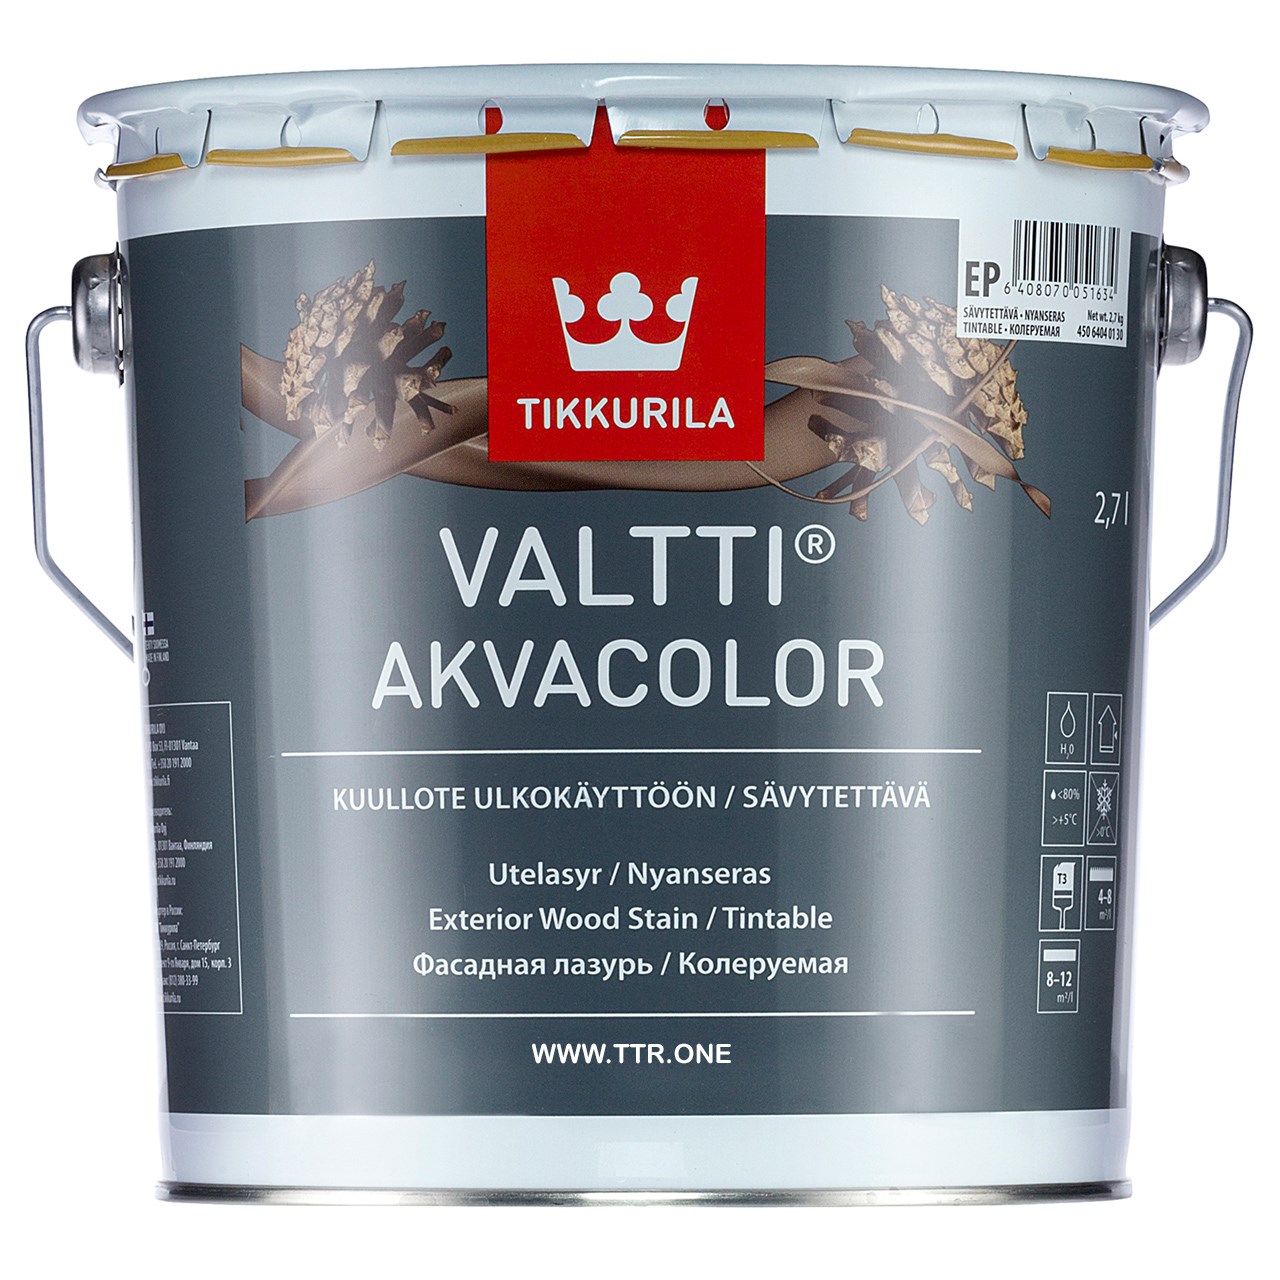 رنگ پایه آب تیکوریلا مدل 5073 VALTTI AKVACOLOR حجم 3 لیتر